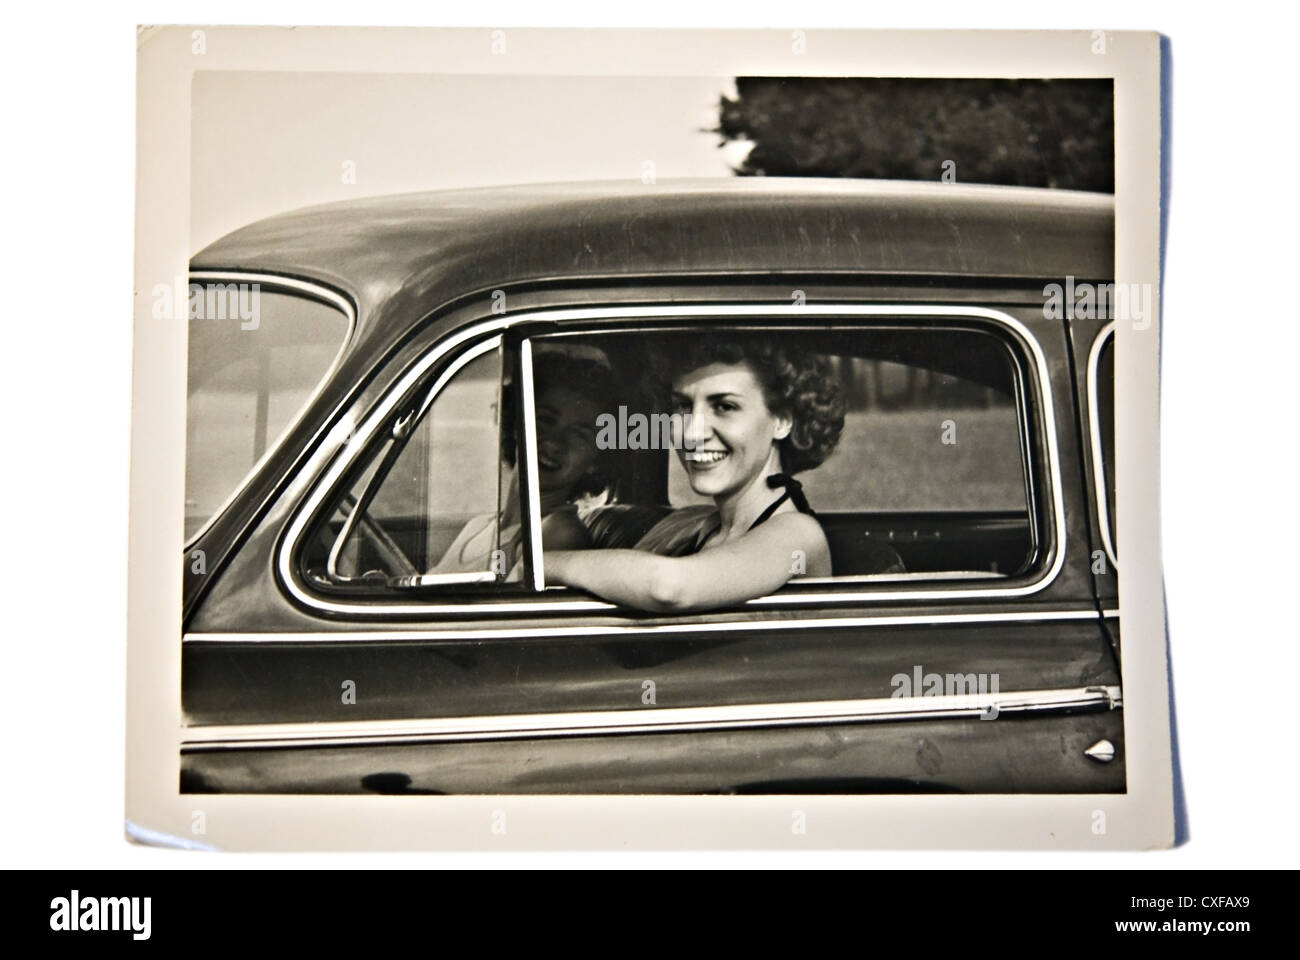 Zwei schöne junge Frauen in einem Auto, Jahrgang 1950. Die auf der Beifahrerseite ist in den Schatten und schwer zu erkennen. Stockfoto